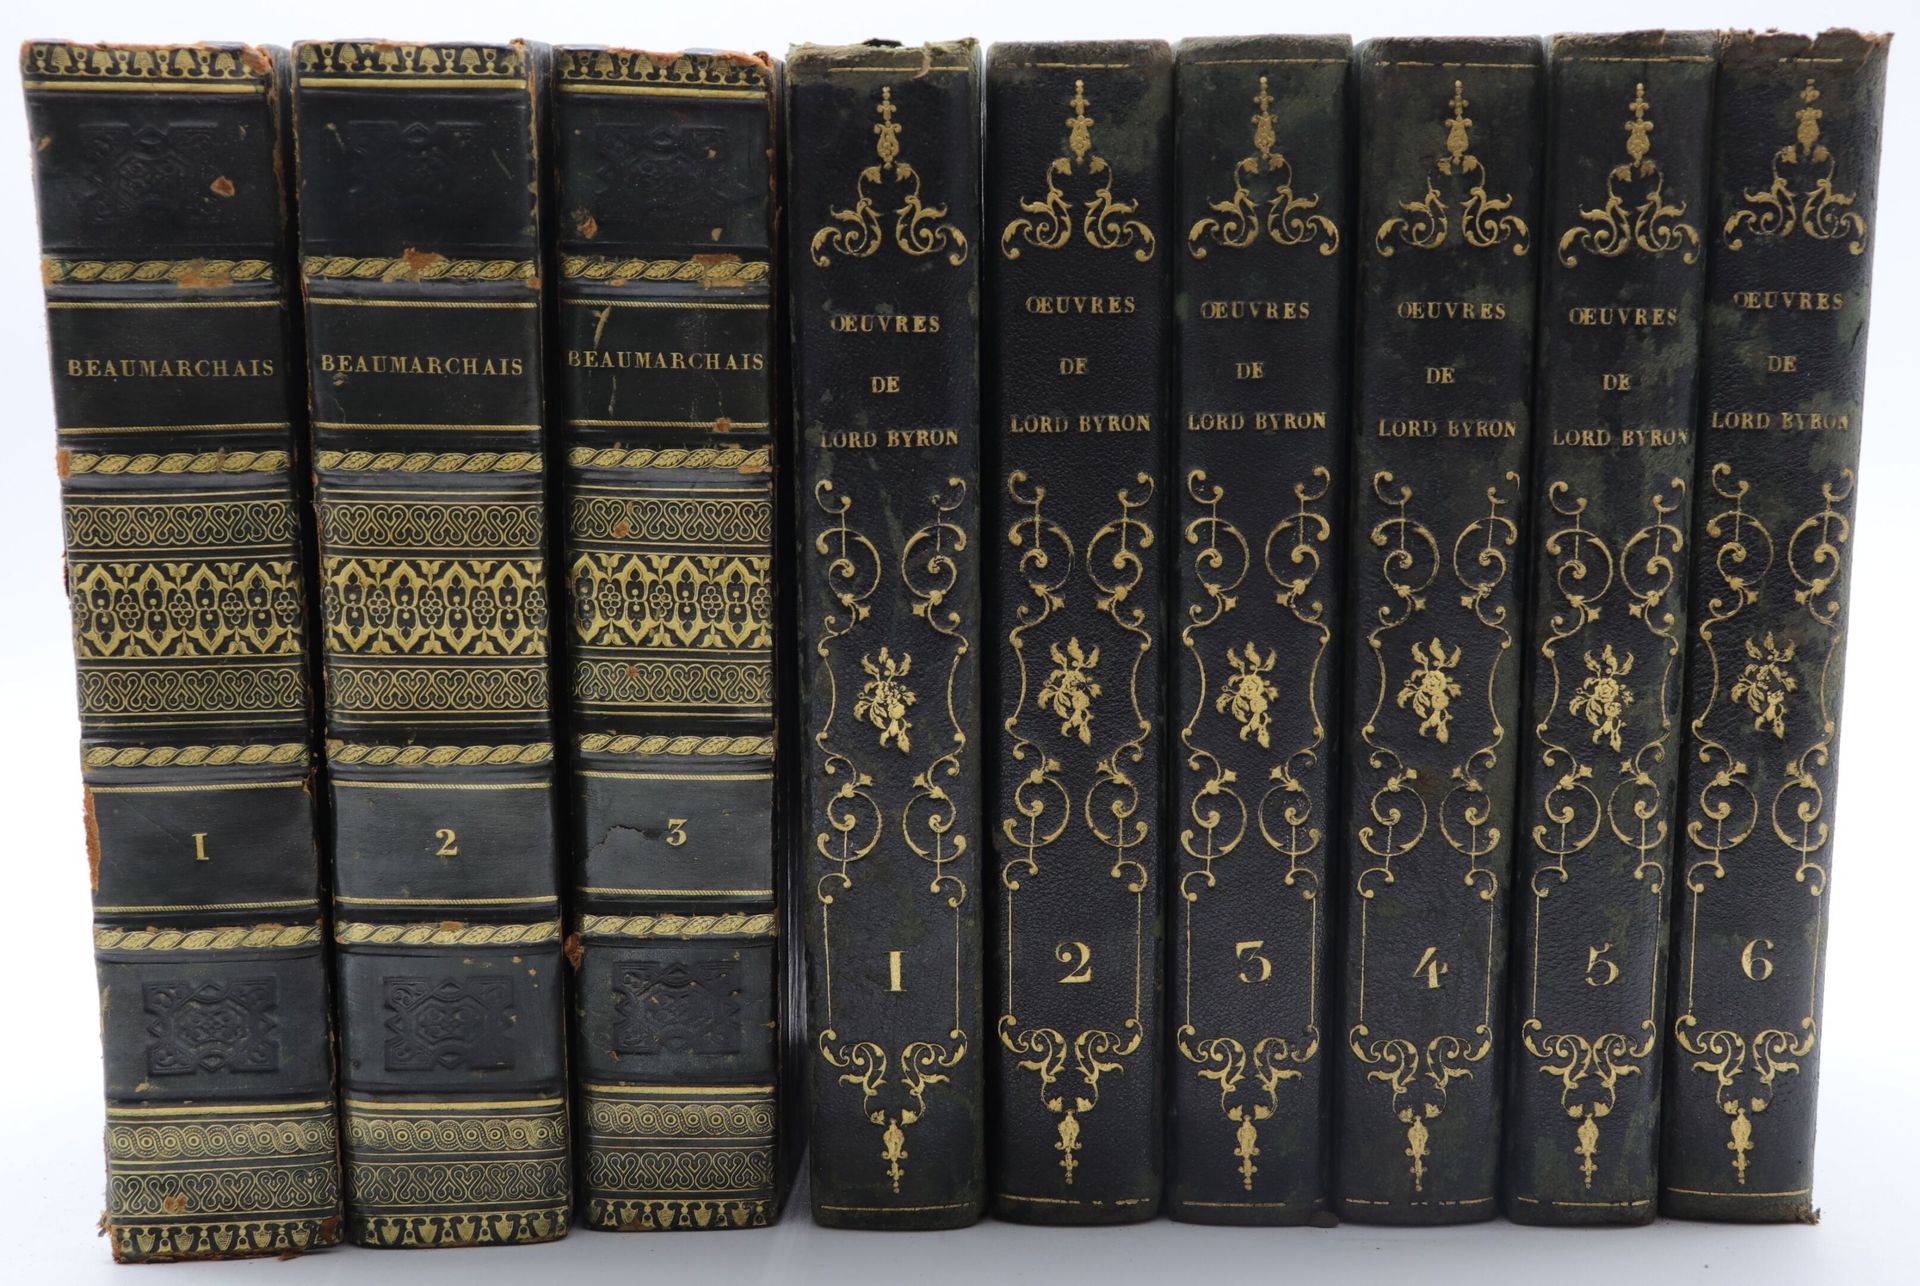 Null 比隆。作品。巴黎，Furne，1830年，6卷8册，半小牛皮，黑色chag.，光滑的书脊，有装饰（书脊脱胶）。有些狐疑。- 博马舍。作品集》。巴黎，1&hellip;